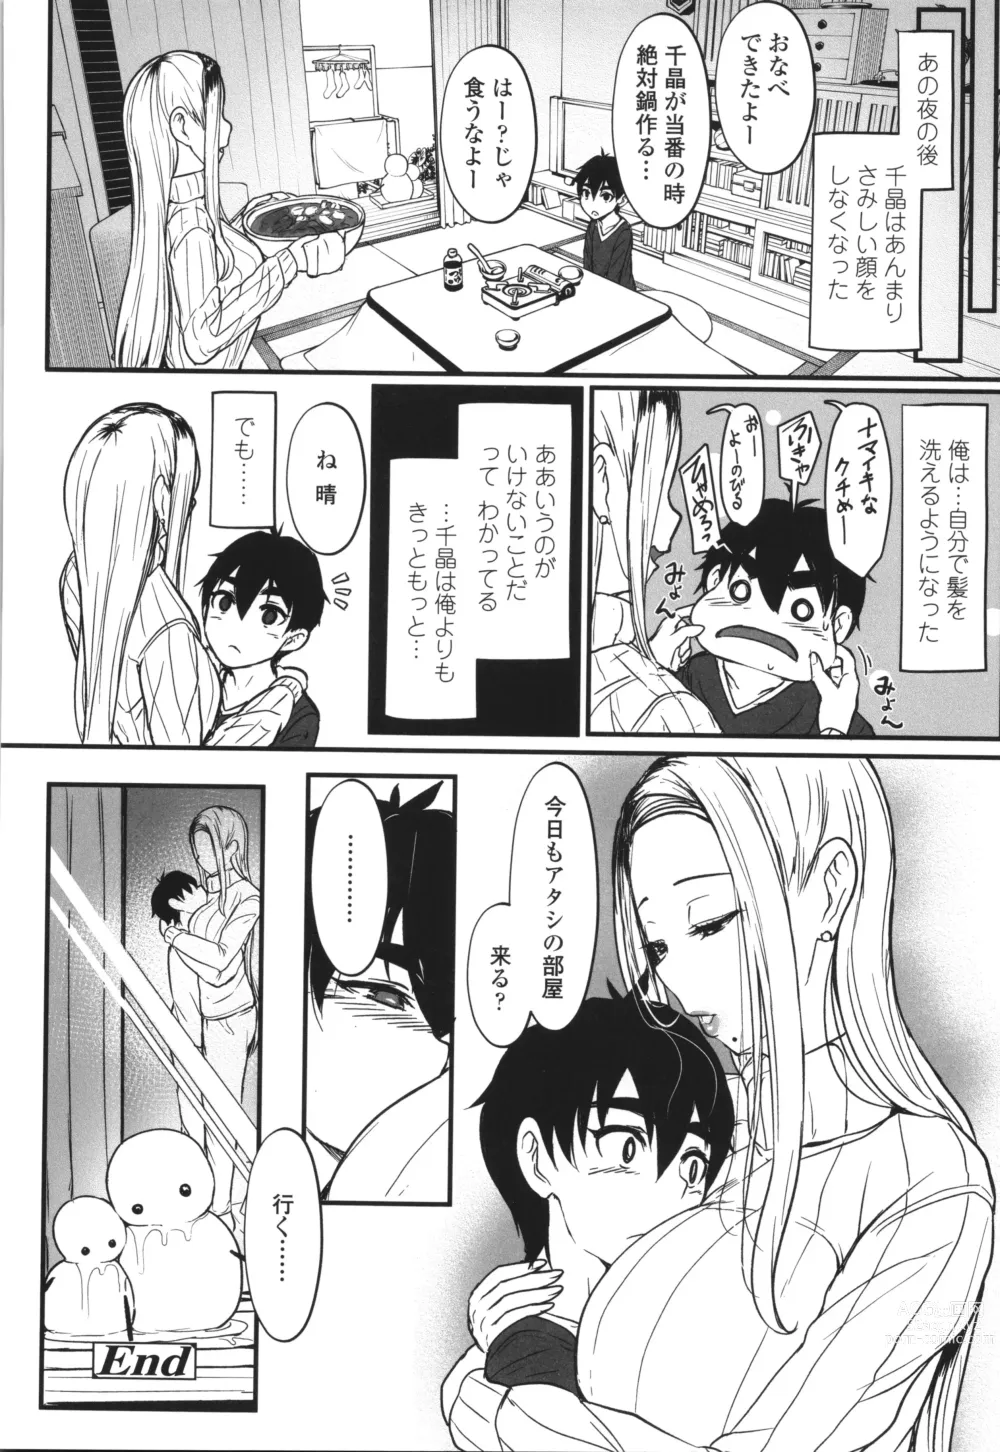 Page 289 of manga Iikedo, Naysyone.